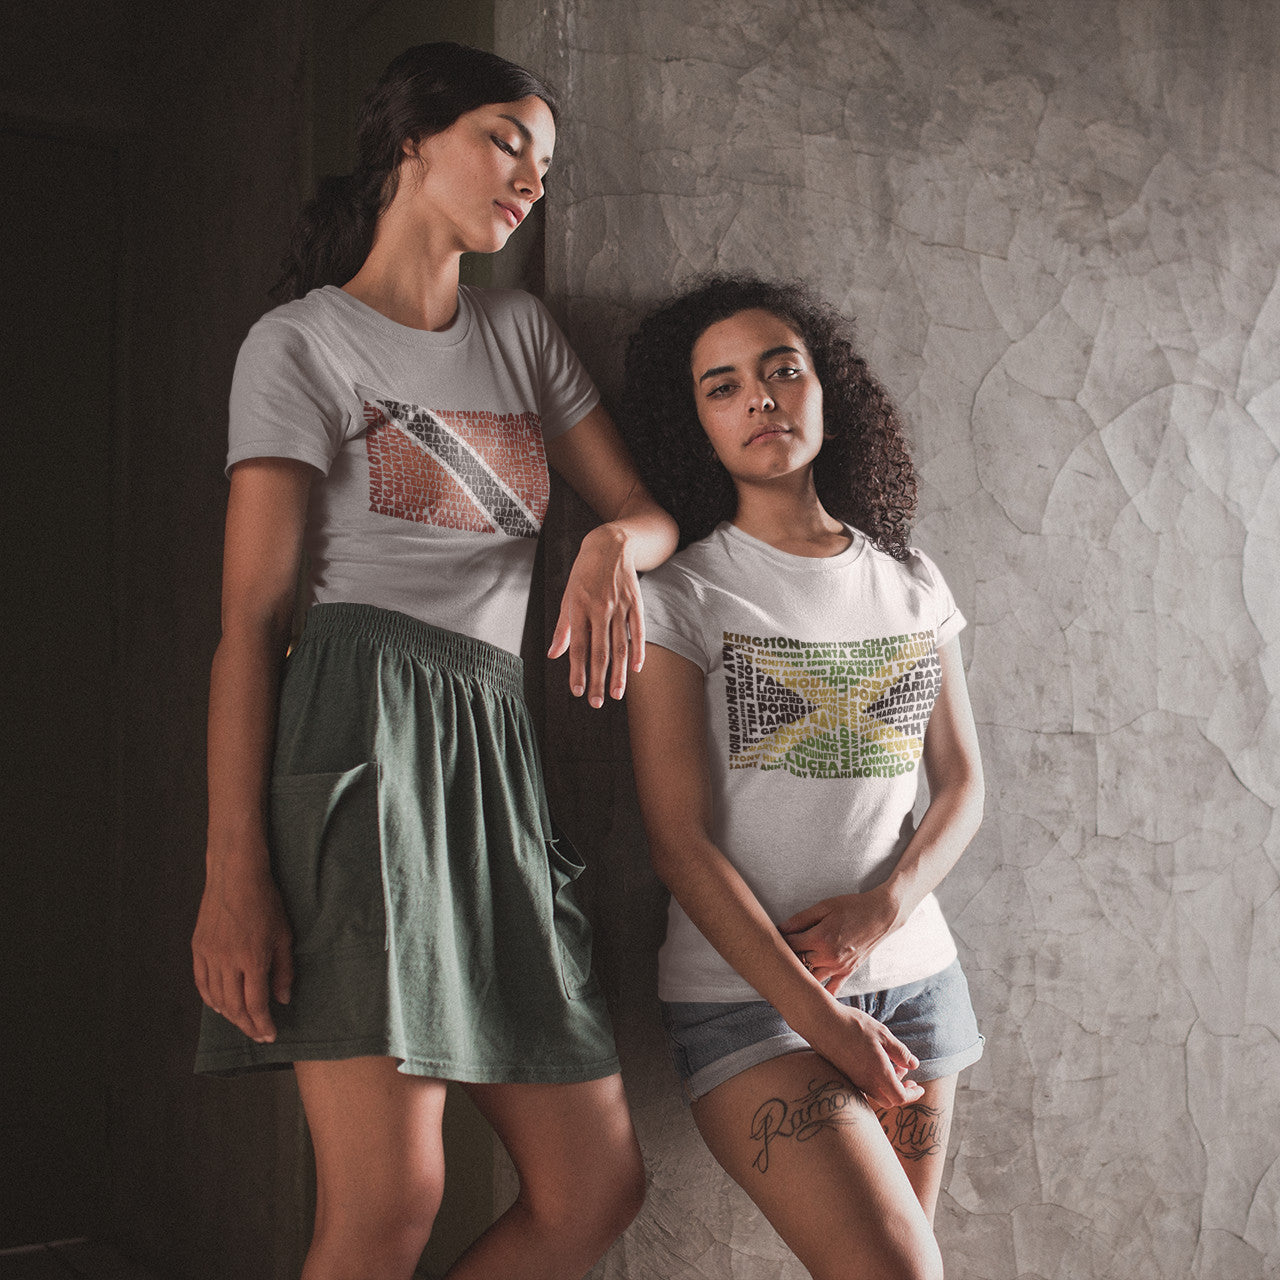 Jamaica Stencil - Women's short sleeve t-shirt